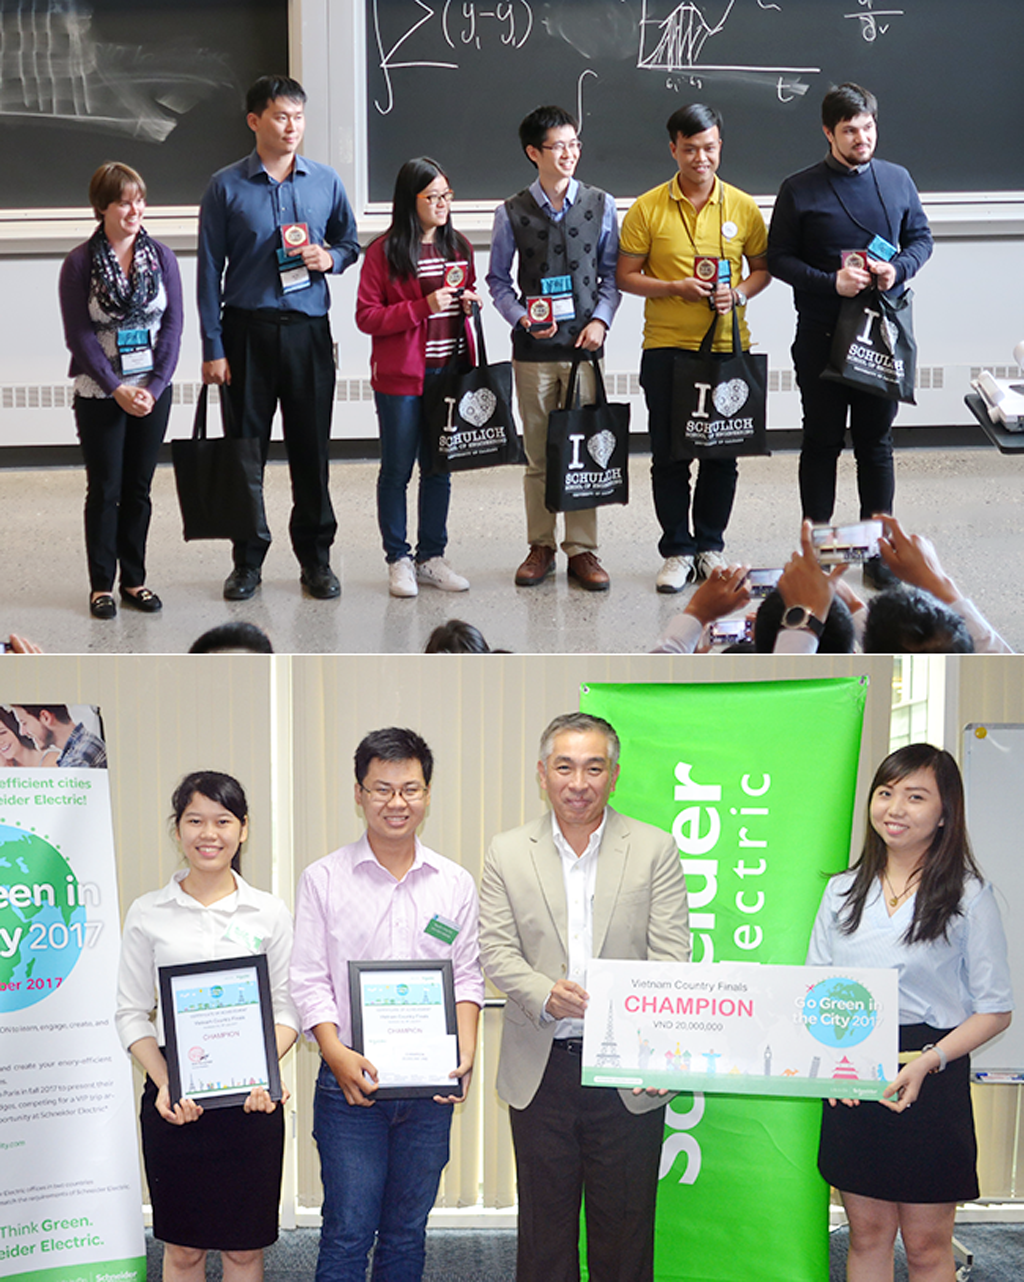 Sinh viên Lê Đình Nhật Khánh của ĐH Duy Tân (áo vàng) trong đội Vô dịch CDIO Academy 2017 (ảnh trên) và sinh viên Duy Tân đoạt giải Sản phẩm được Bình chọn nhiều nhất tại Microsoft Imagine Cup Châu Á 2018 (ảnh dưới)